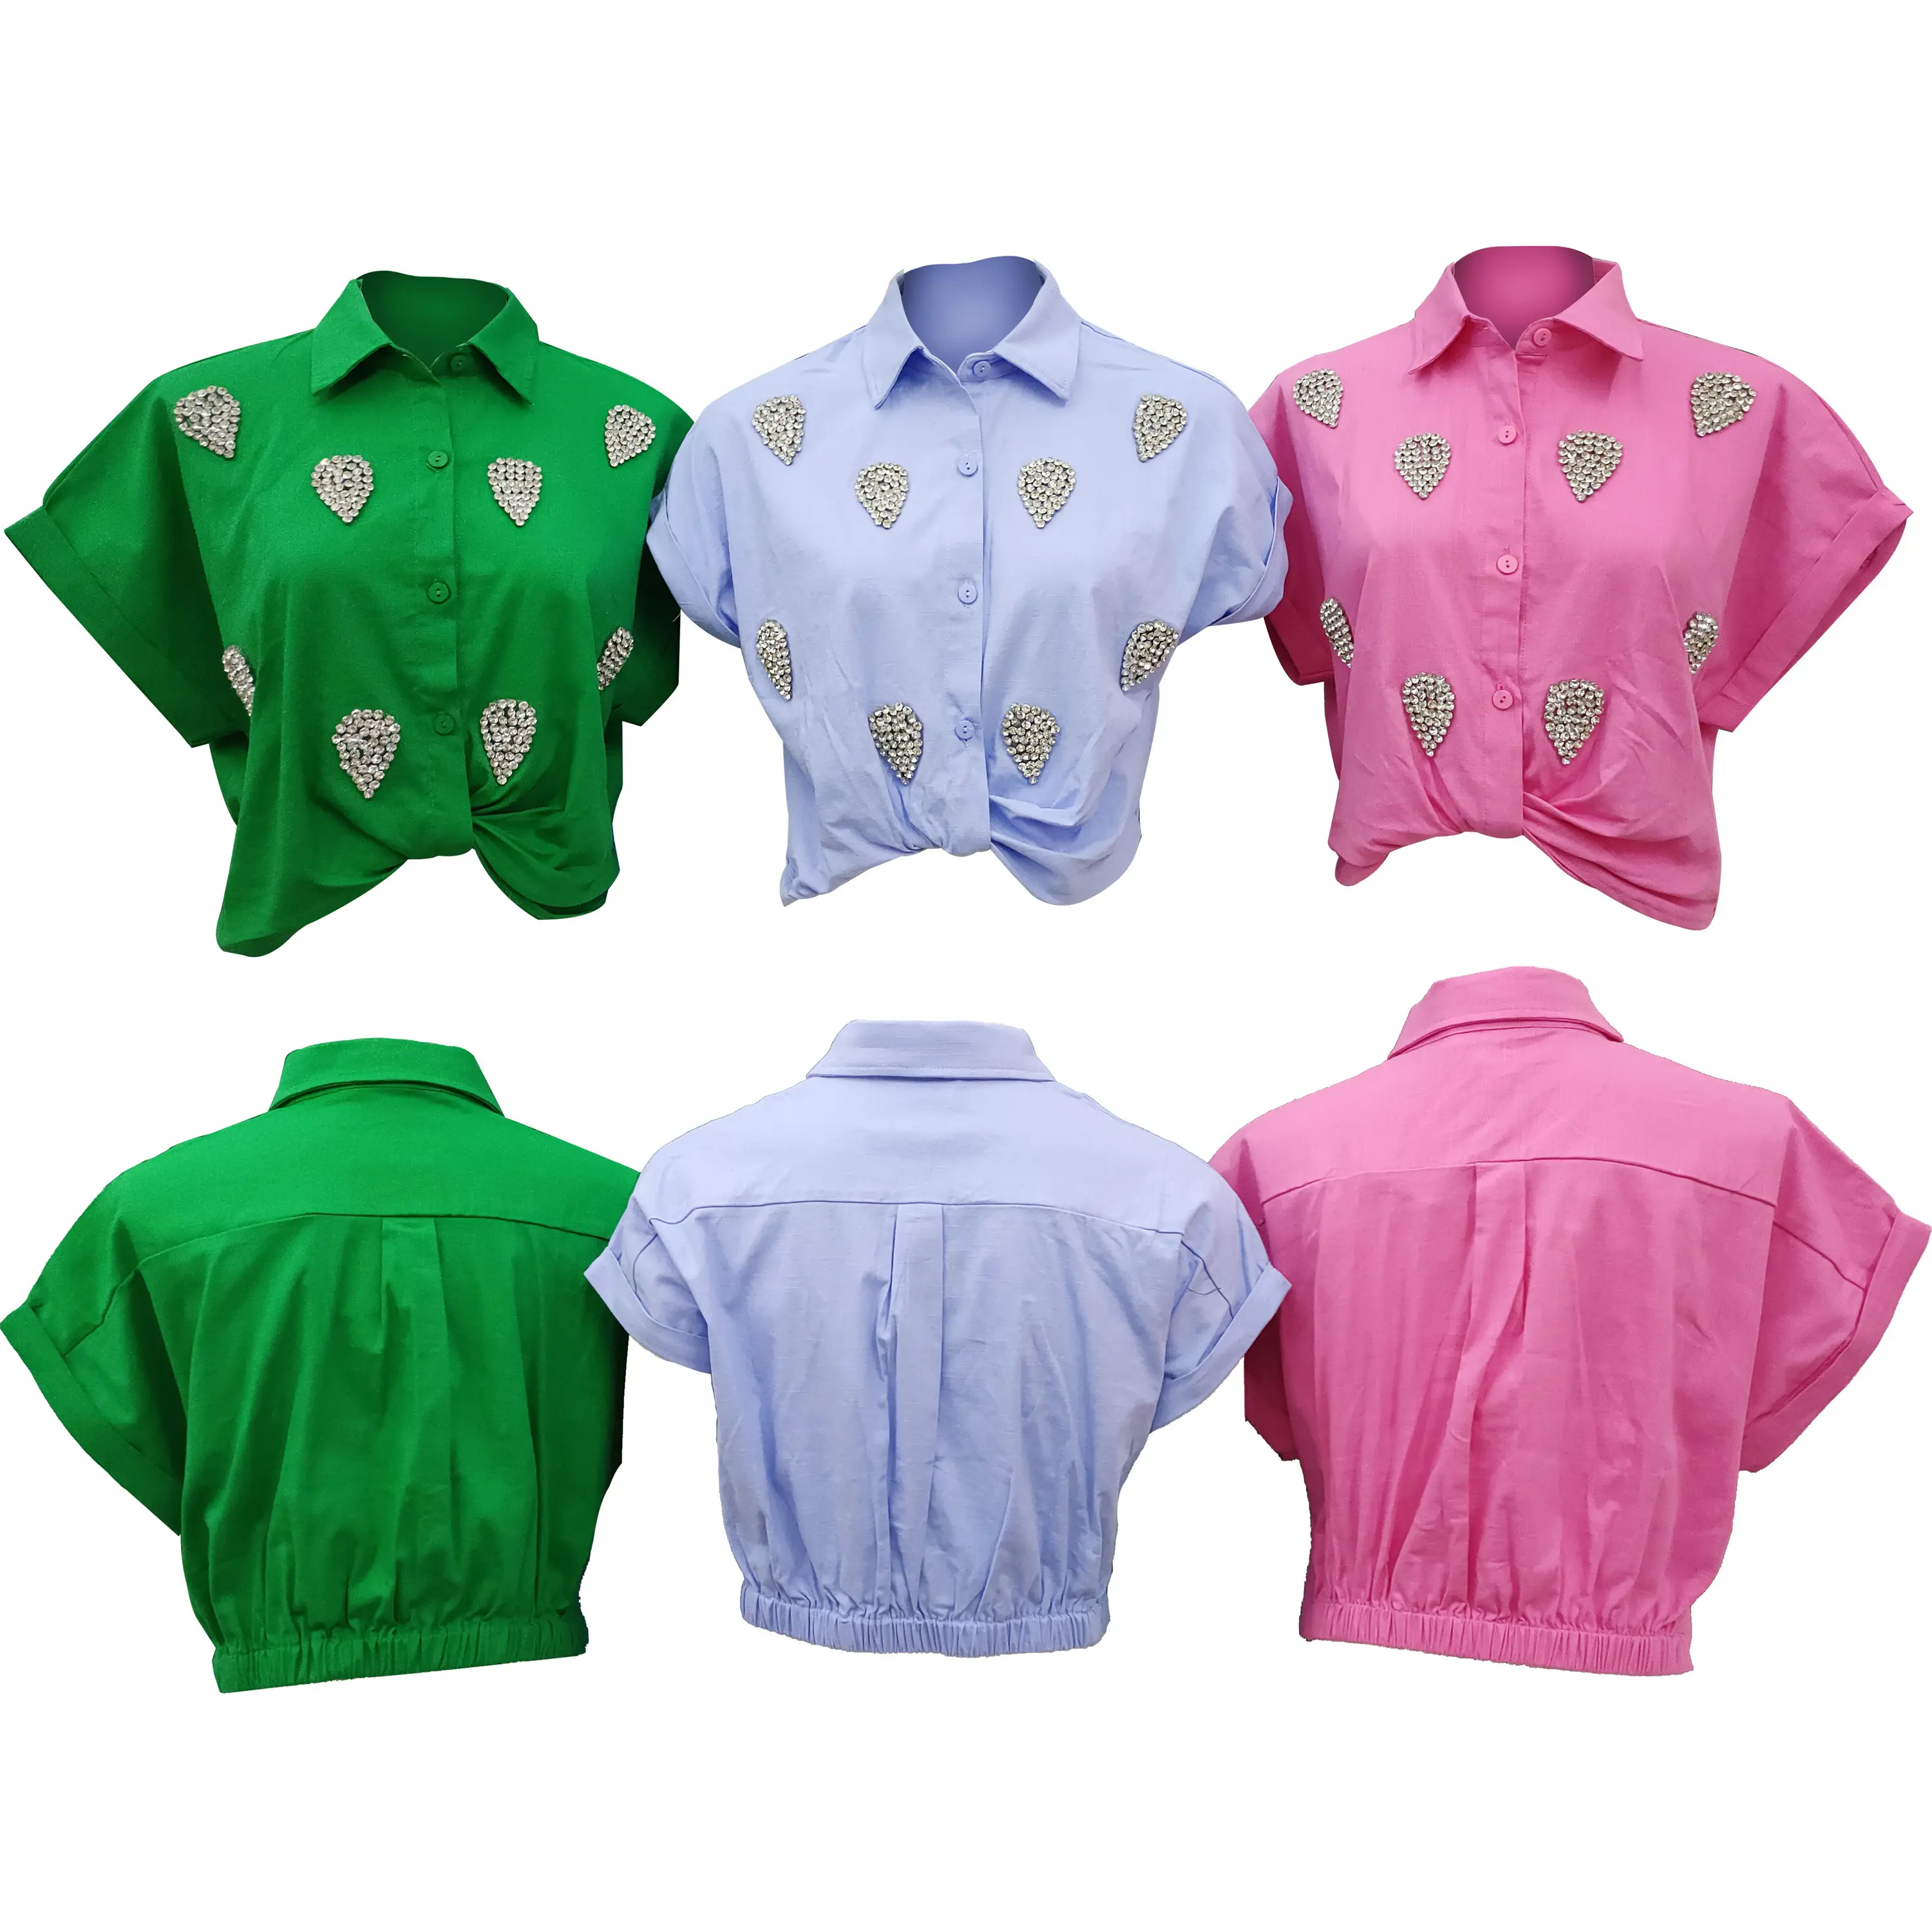 ブラウス & シャツ毎日の夏の春の着用のための速乾性のしわ防止 & 収縮防止ODMの服装スタイリッシュ